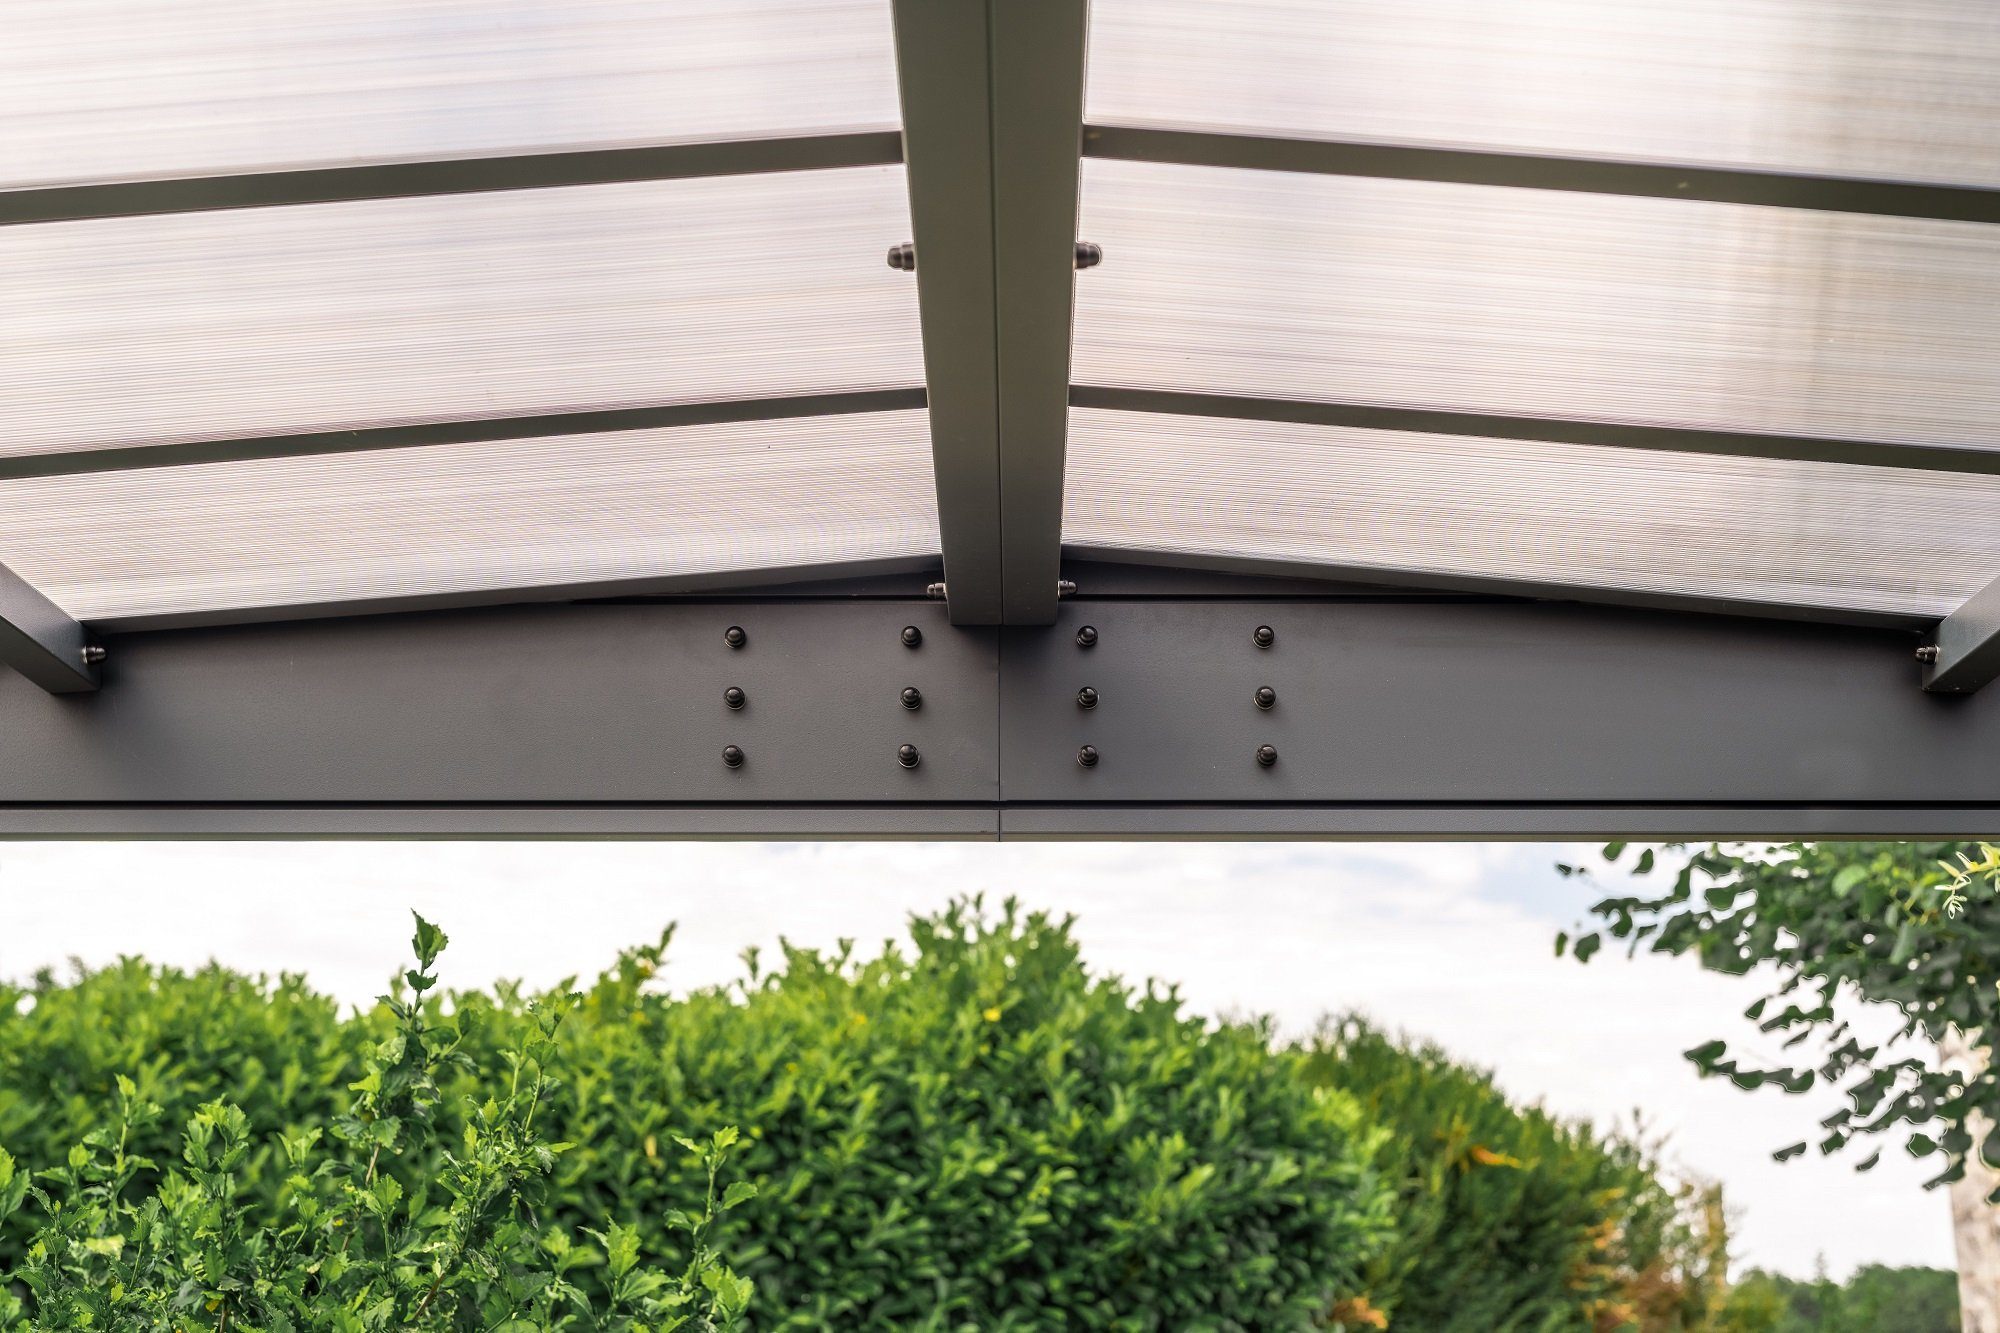 Trigano Einzelcarport Carport Libeccio Metall m2 aus Doppeldach Aluminium, 16.60 Konstruktion, Einfahrtshöhe, robuste 2,10 cm